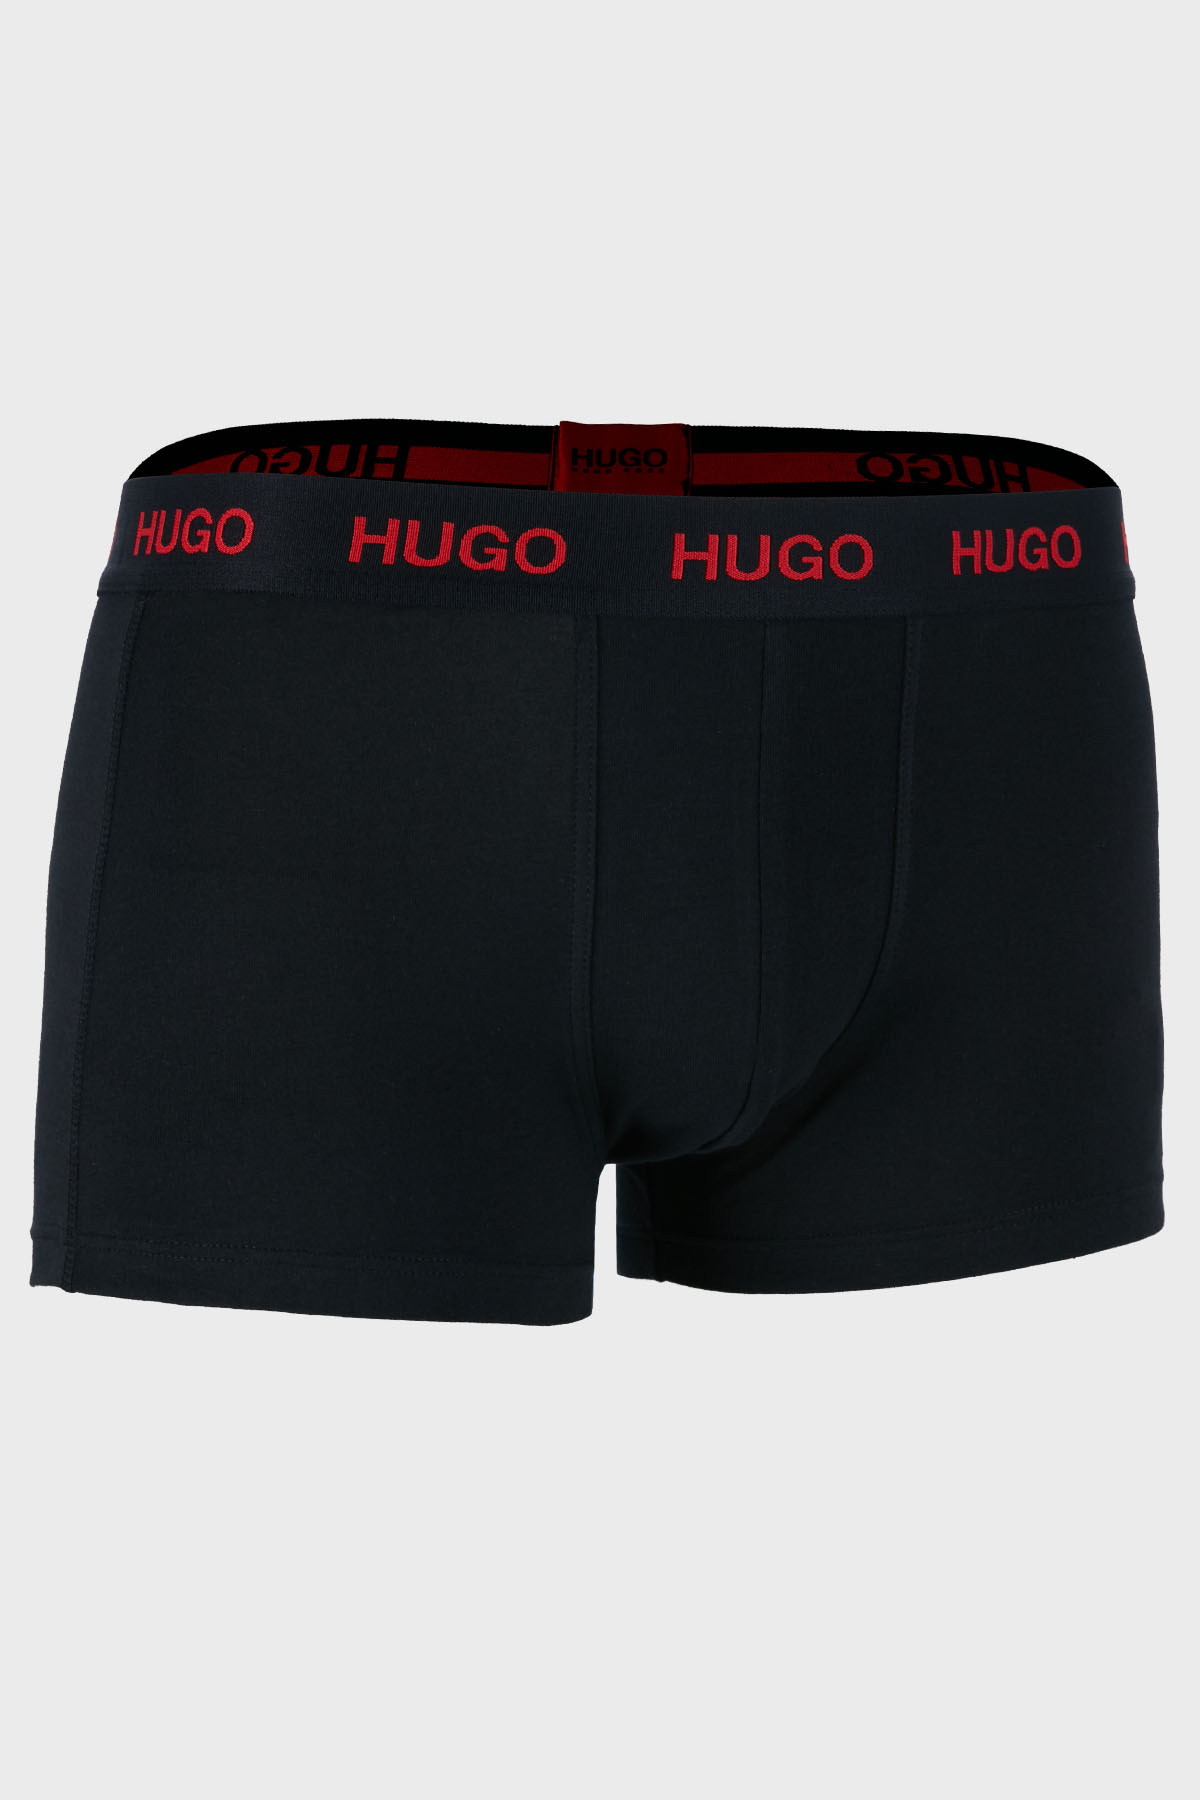 Hugo Pamuklu 3 Pack Erkek Boxer 50449351 975 SİYAH